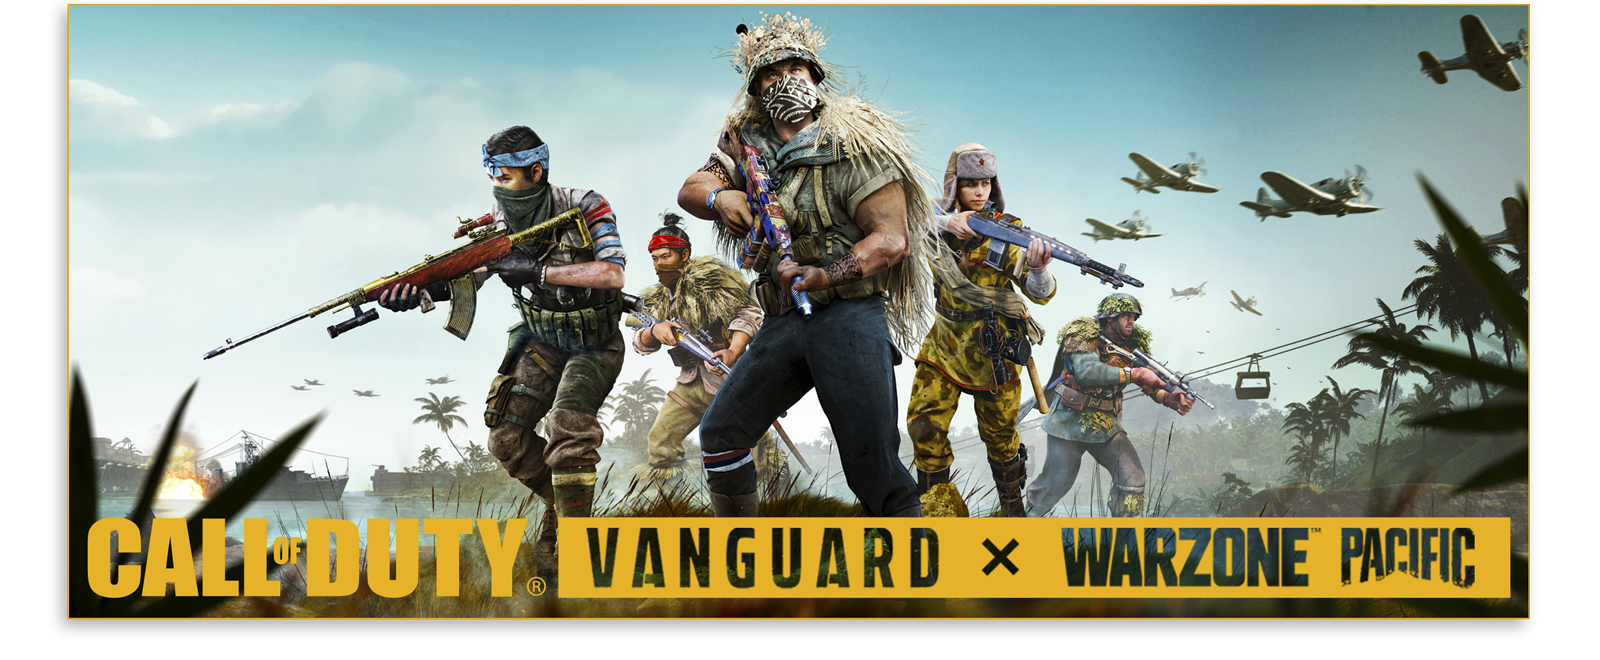 Ilustraciones del pase de batalla de la Temporada 1 de Call of Duty Vanguard y Warzone